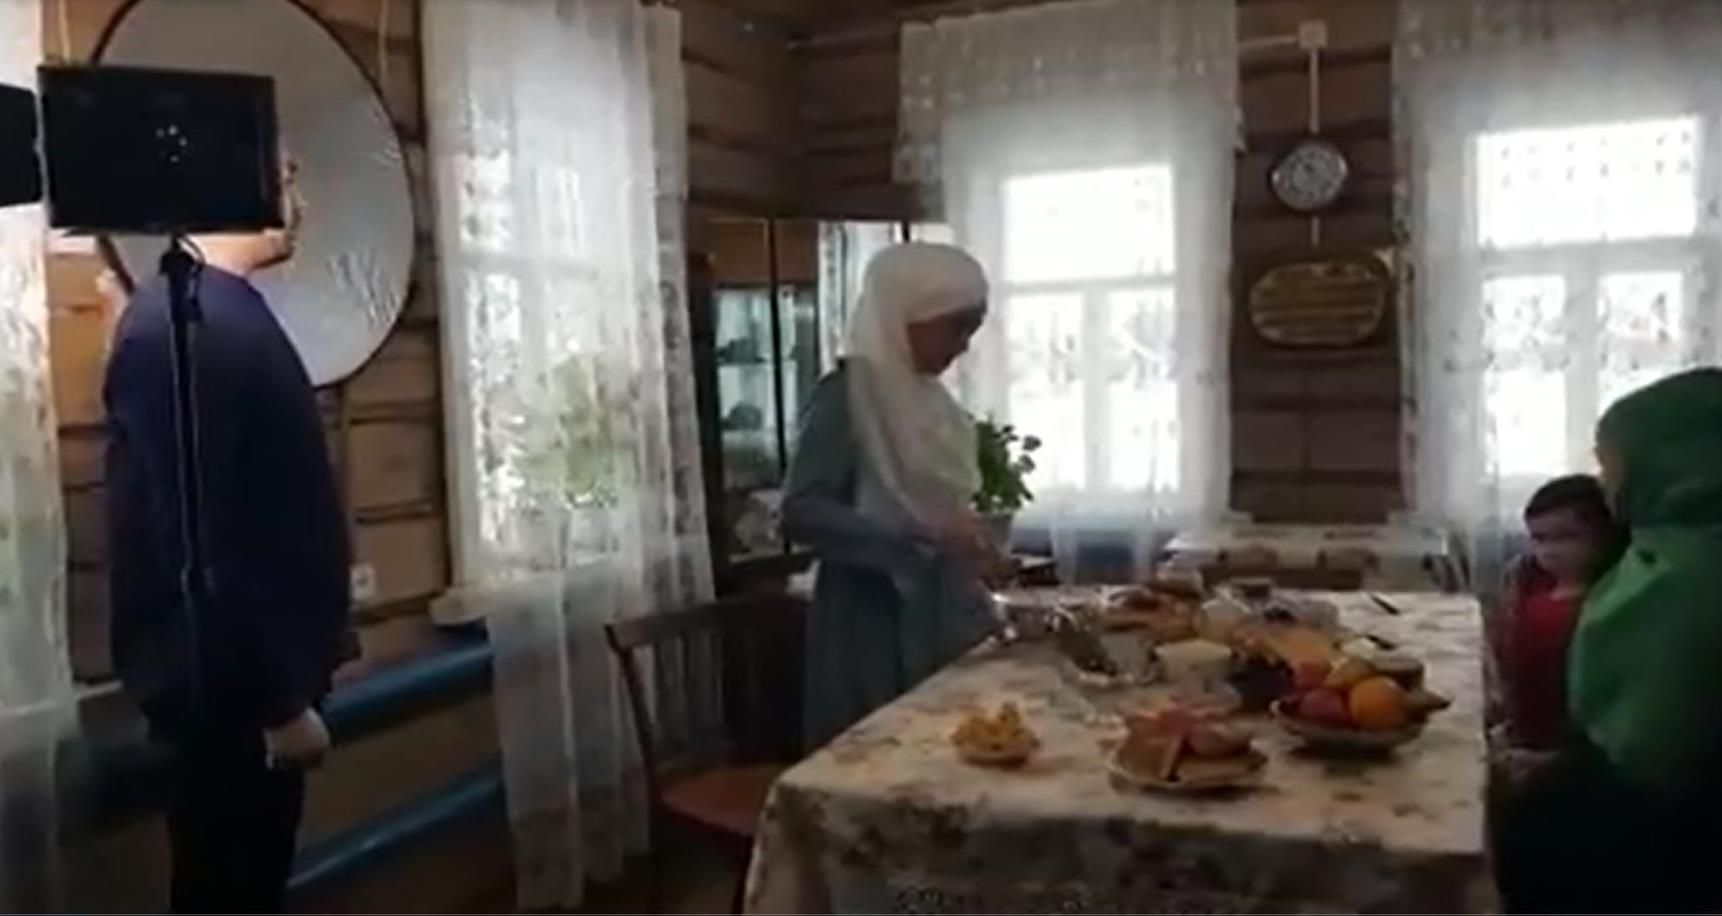 Сегодня вечером на канале «Буа дулкыннары» смотрите историю съемки фильма «Остазбике» в деревне Черки-Кильдуразы